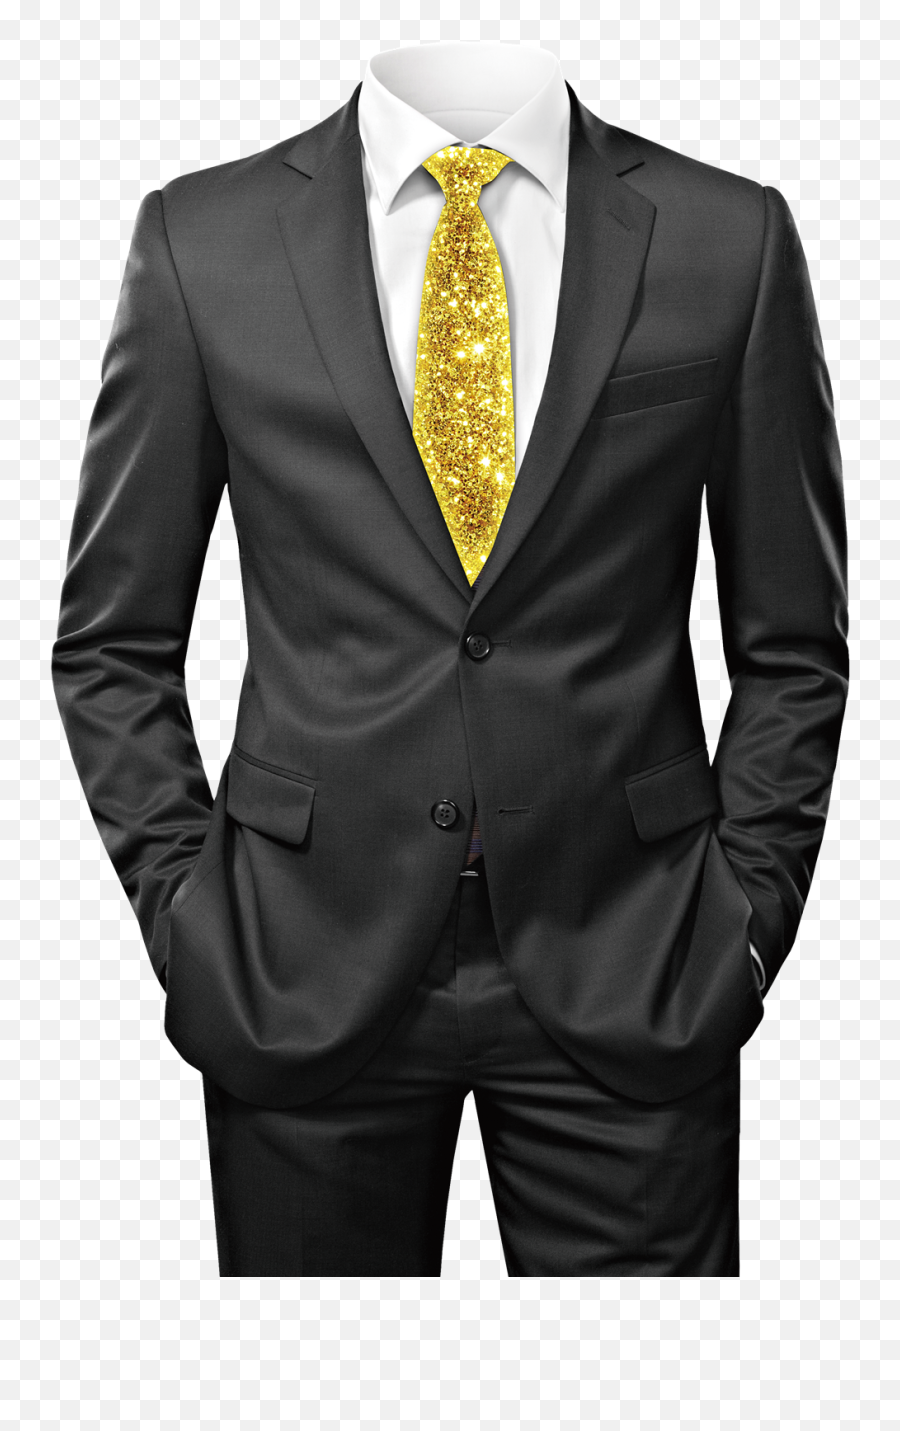 Coat Png Transparent Images - Man Suit Png No Head,Suit And Tie Png